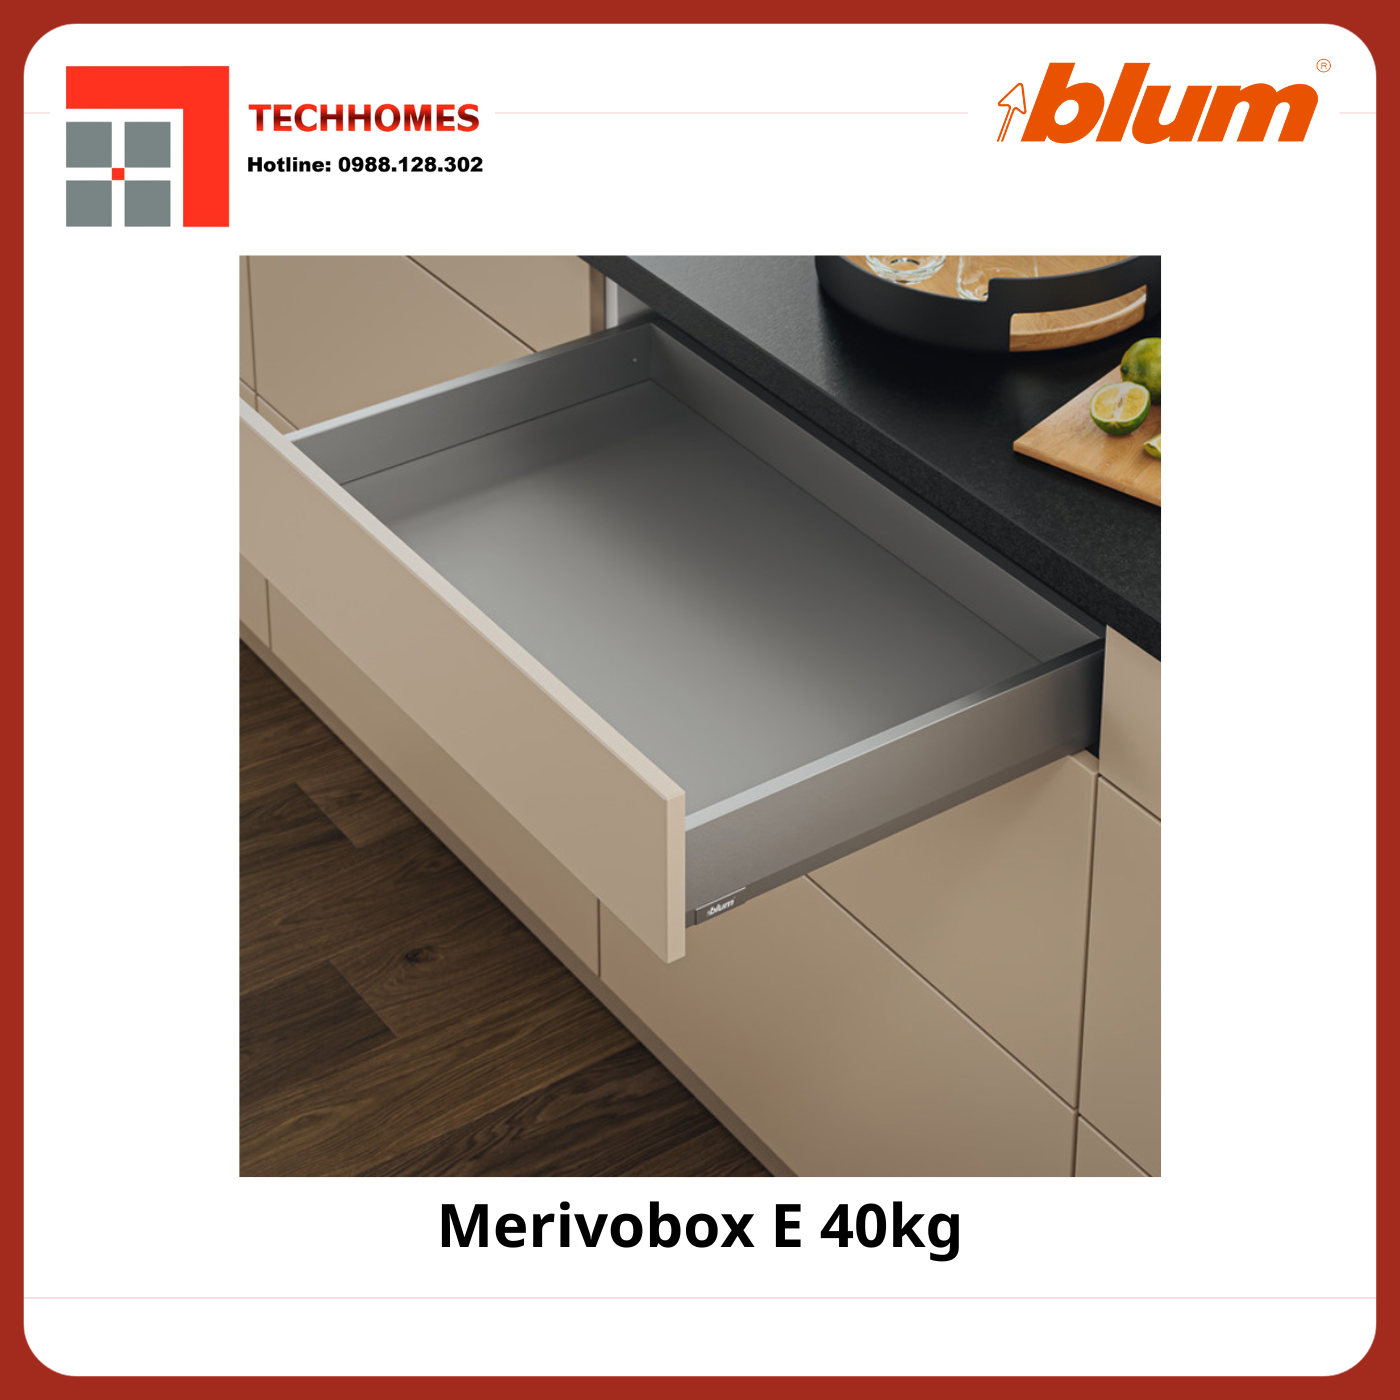 RAY HỘP BLUM MERIVOBOX E 40KG - Merivobox E 40kg